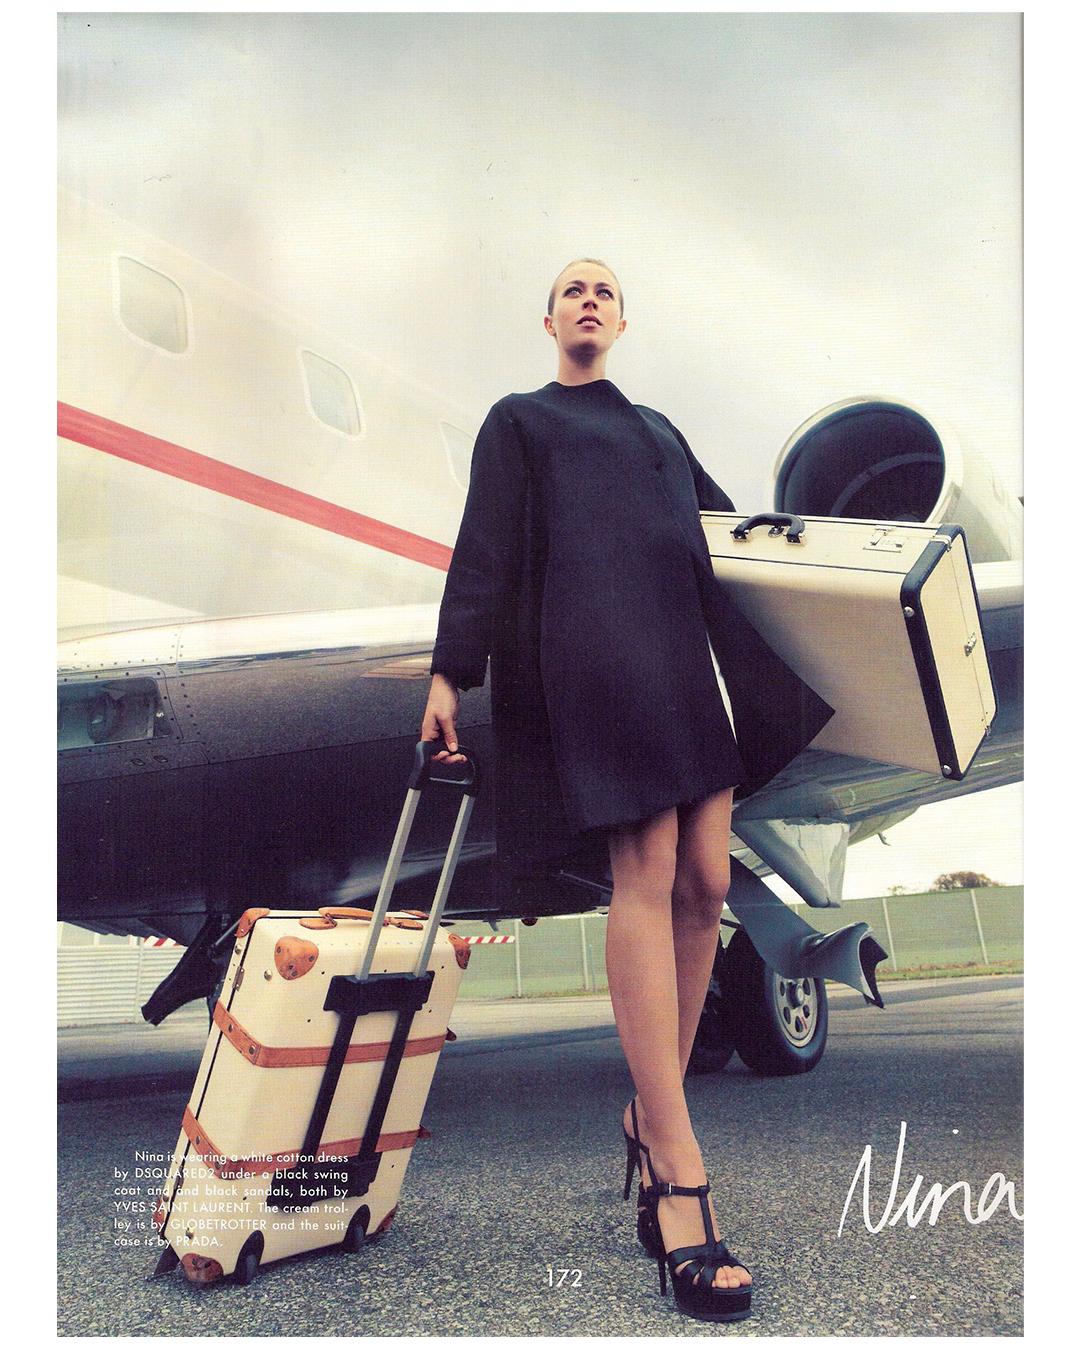 Prada Pergamena vintage style ivory black hard leather luggage bag suitcase case For Sale 6